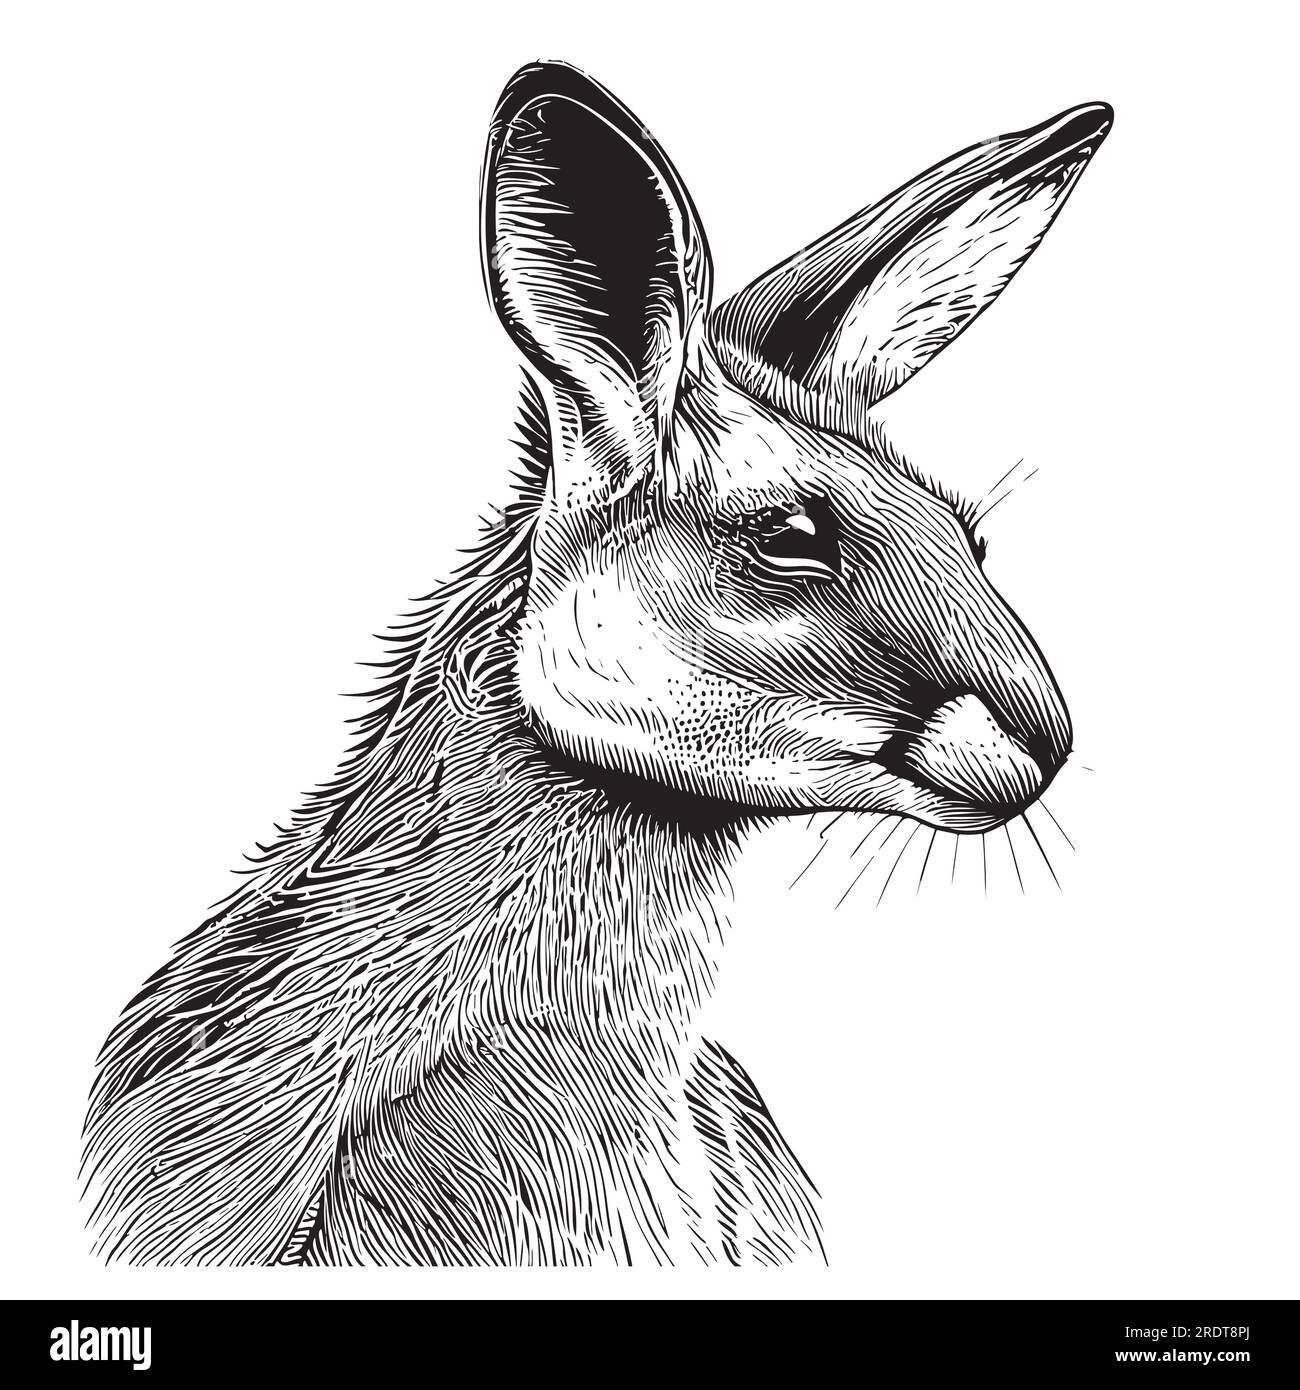 Kangaroo cara animal dibujado a mano ilustración de boceto Ilustración del Vector